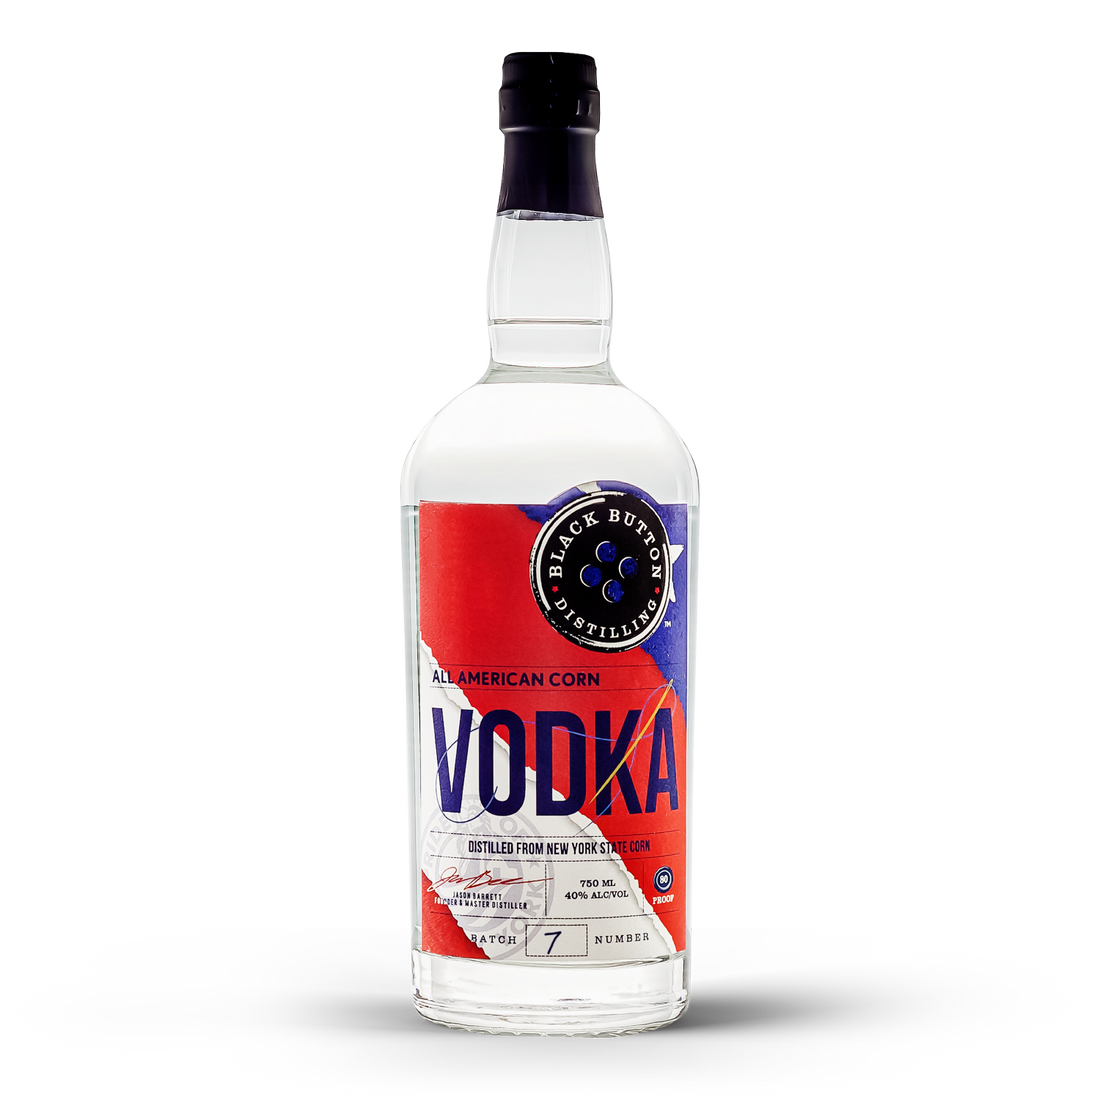 All American Corn Vodka